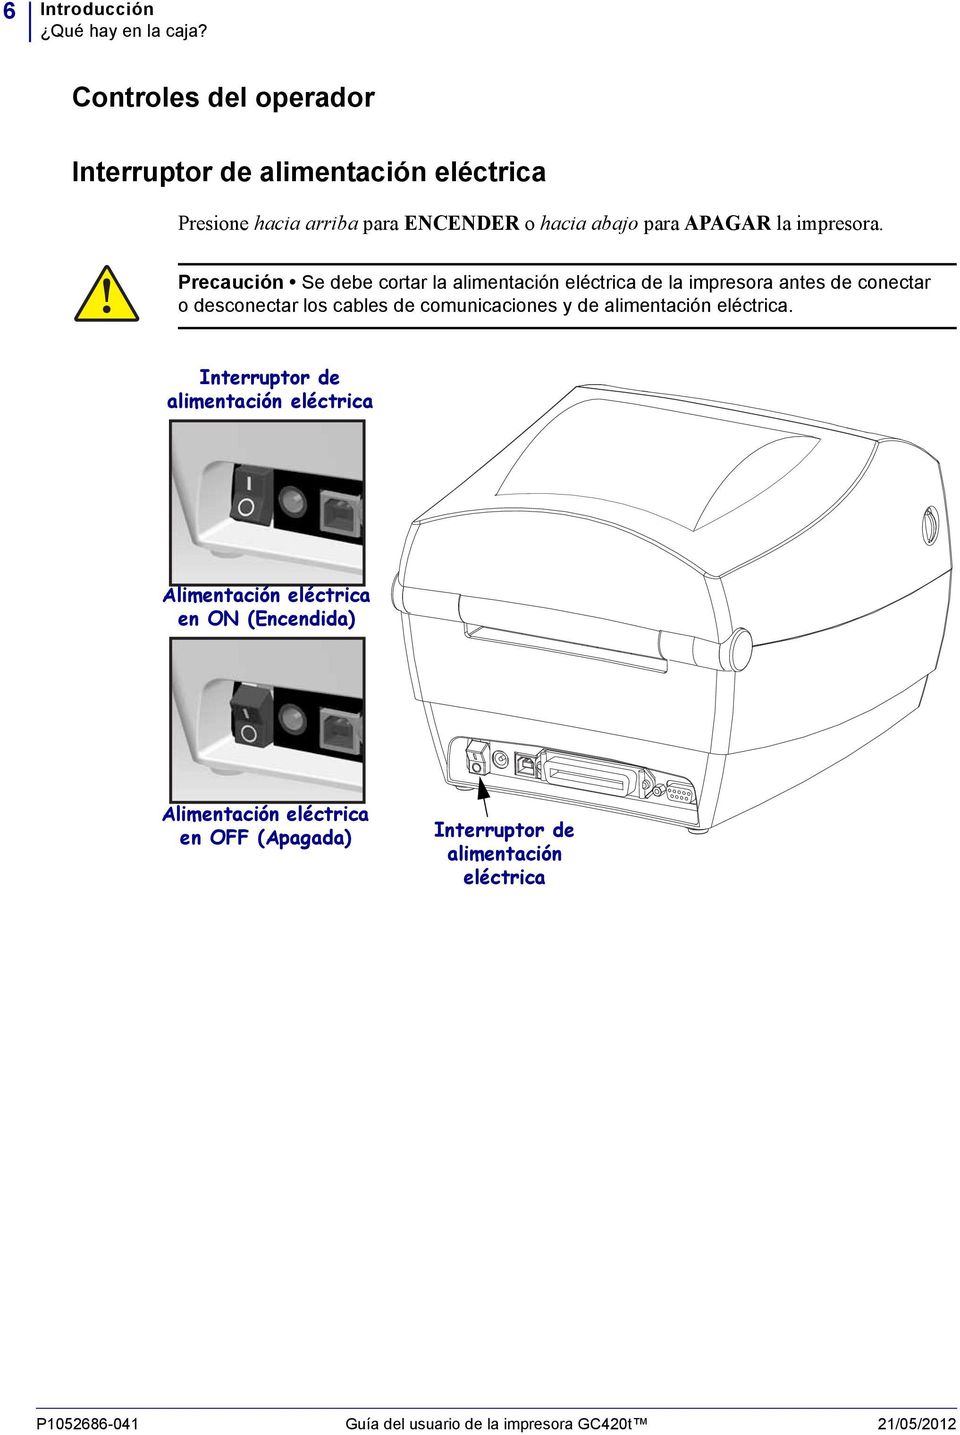 Precaución Se debe cortar la alimentación eléctrica de la impresora antes de conectar o desconectar los cables de comunicaciones y de